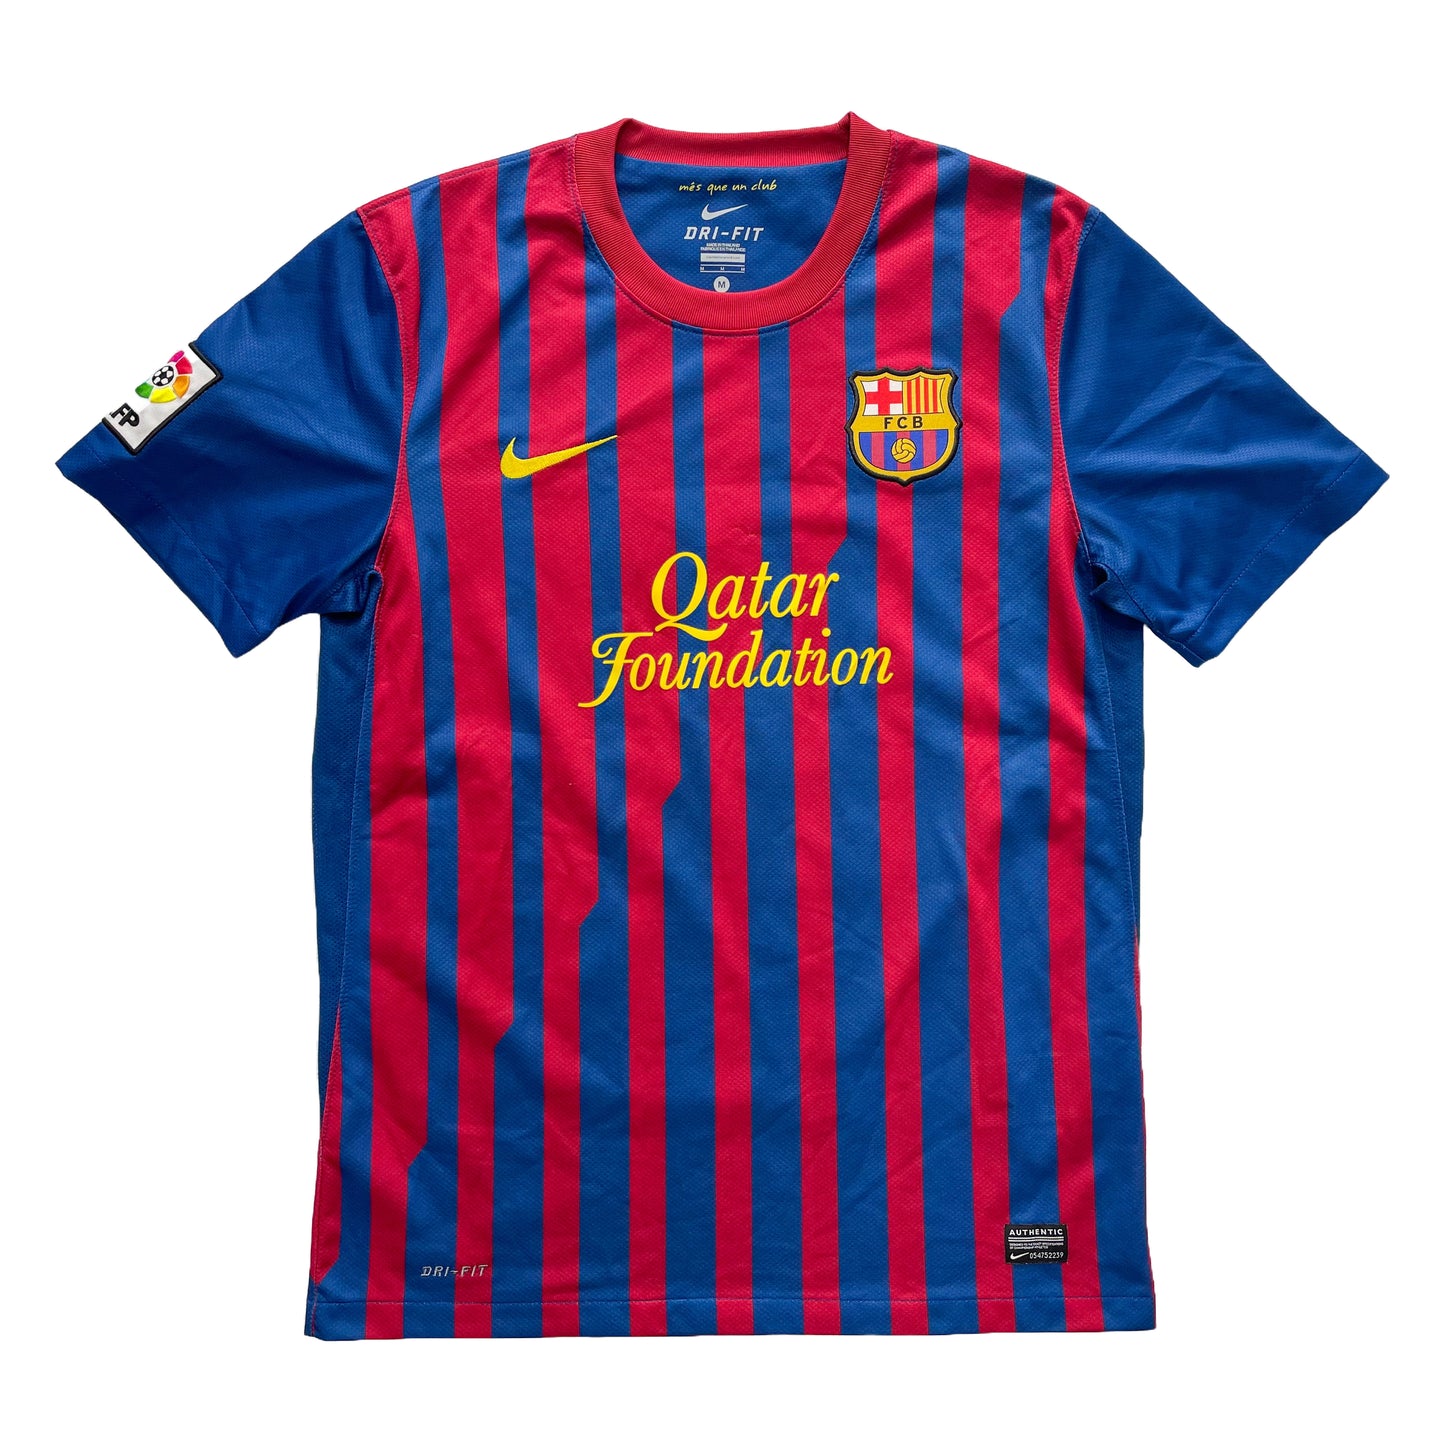 <tc>2011-2012 FC Barcelona camiseta local #10 Messi (M)</tc>